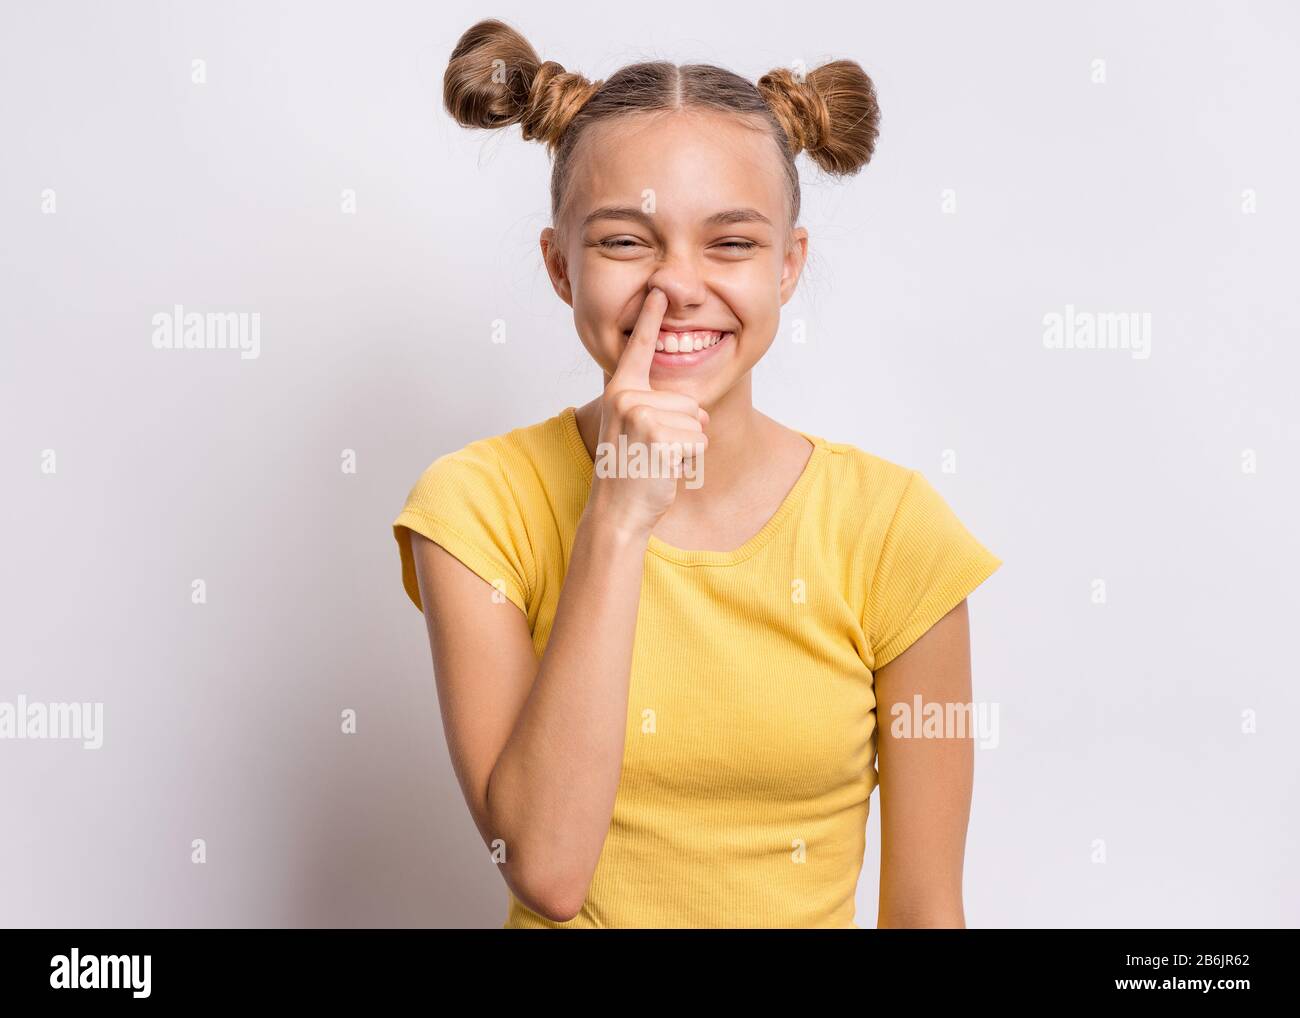 Teen girl portrait in studio Stock Photo